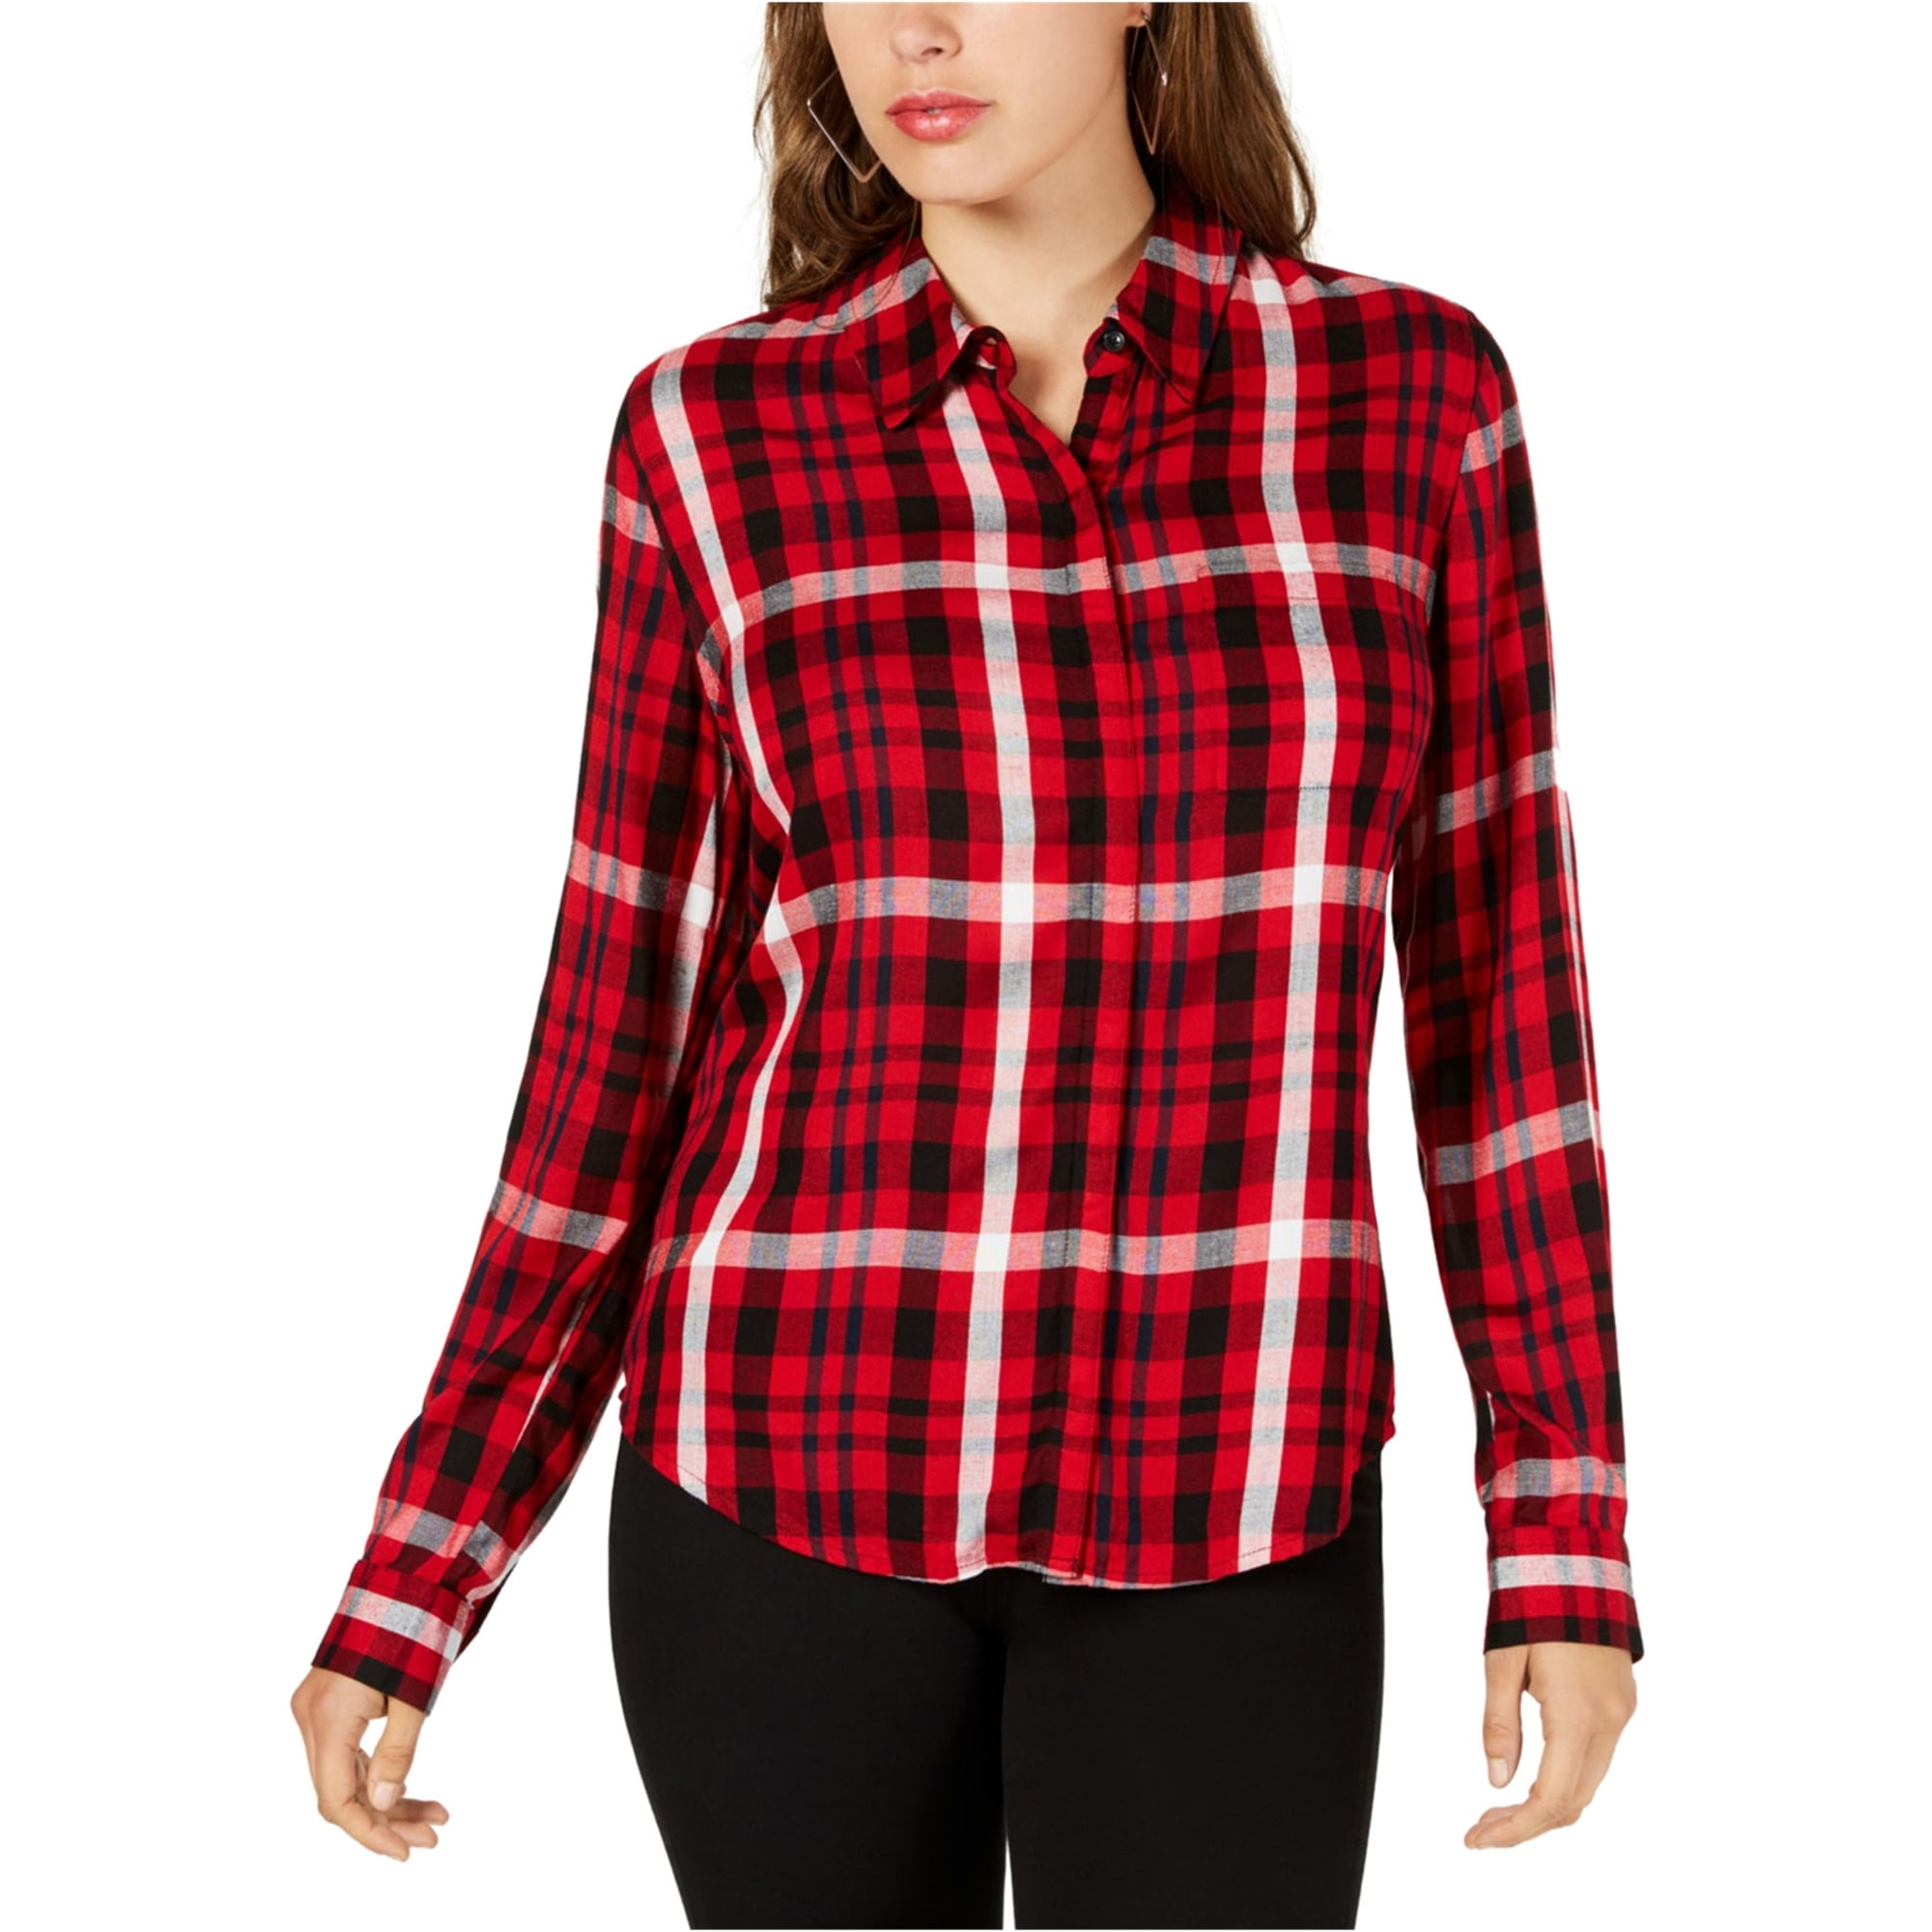 GUESS Plaid Button Up Shirt, Red, - Walmart.com